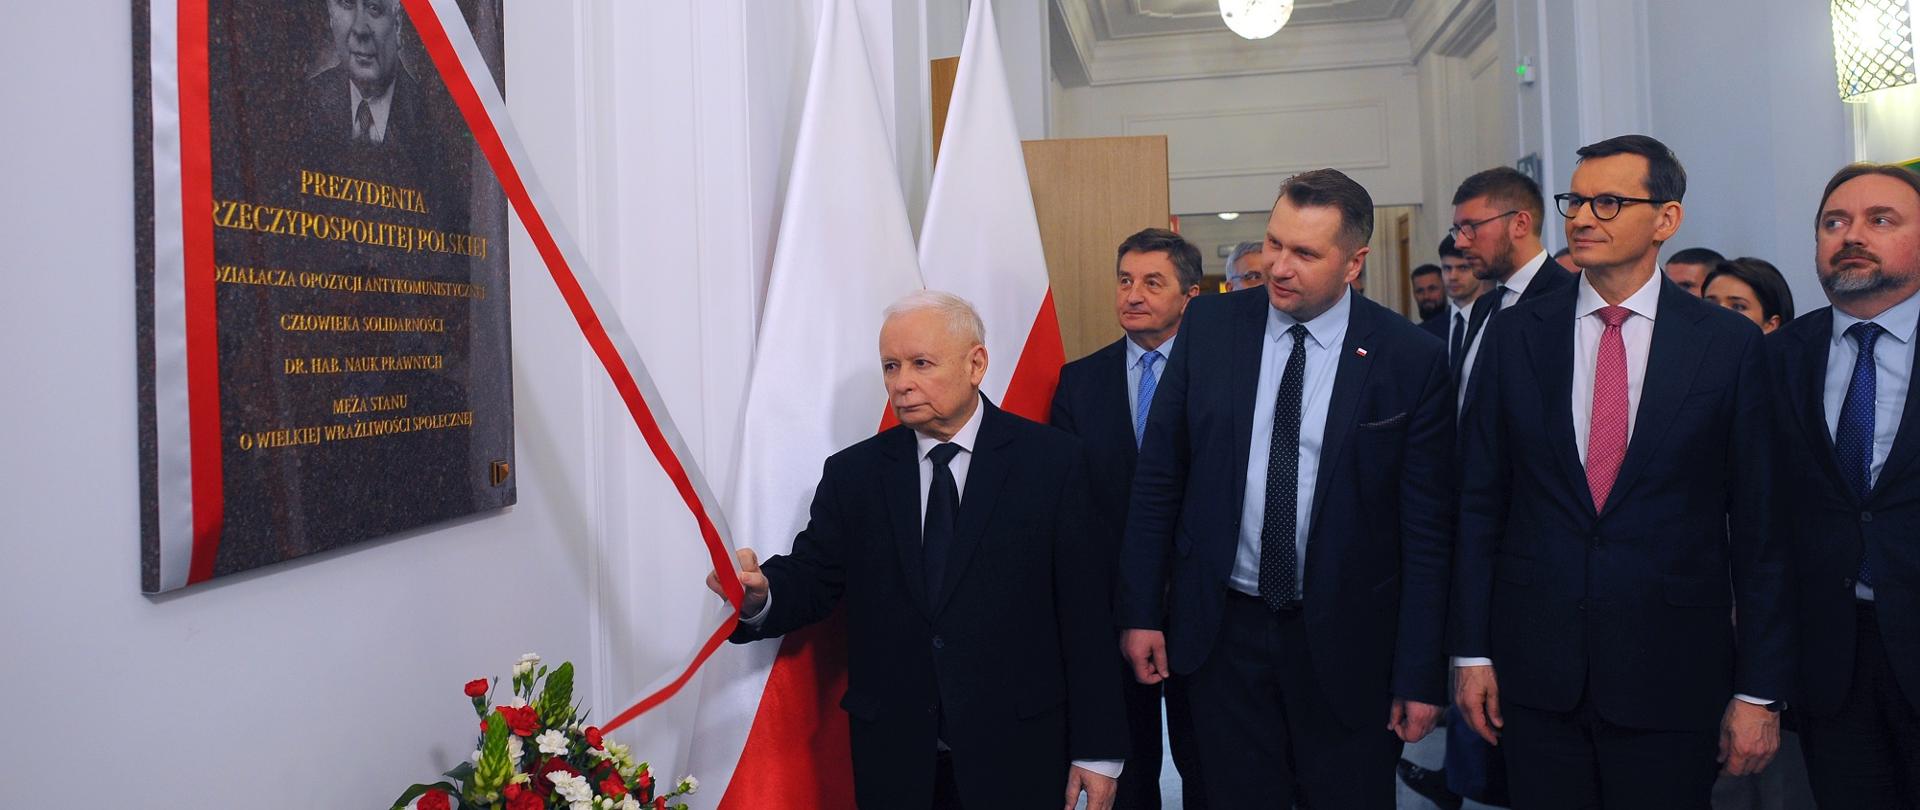 Widok na korytarz, na białej ścianie wisi ciemnoszara tablica z portretem Lecha Kaczyńskiego przesłonięta biało-czerwoną wstążką, przed nią stoi grupa mężczyzn w garniturach.